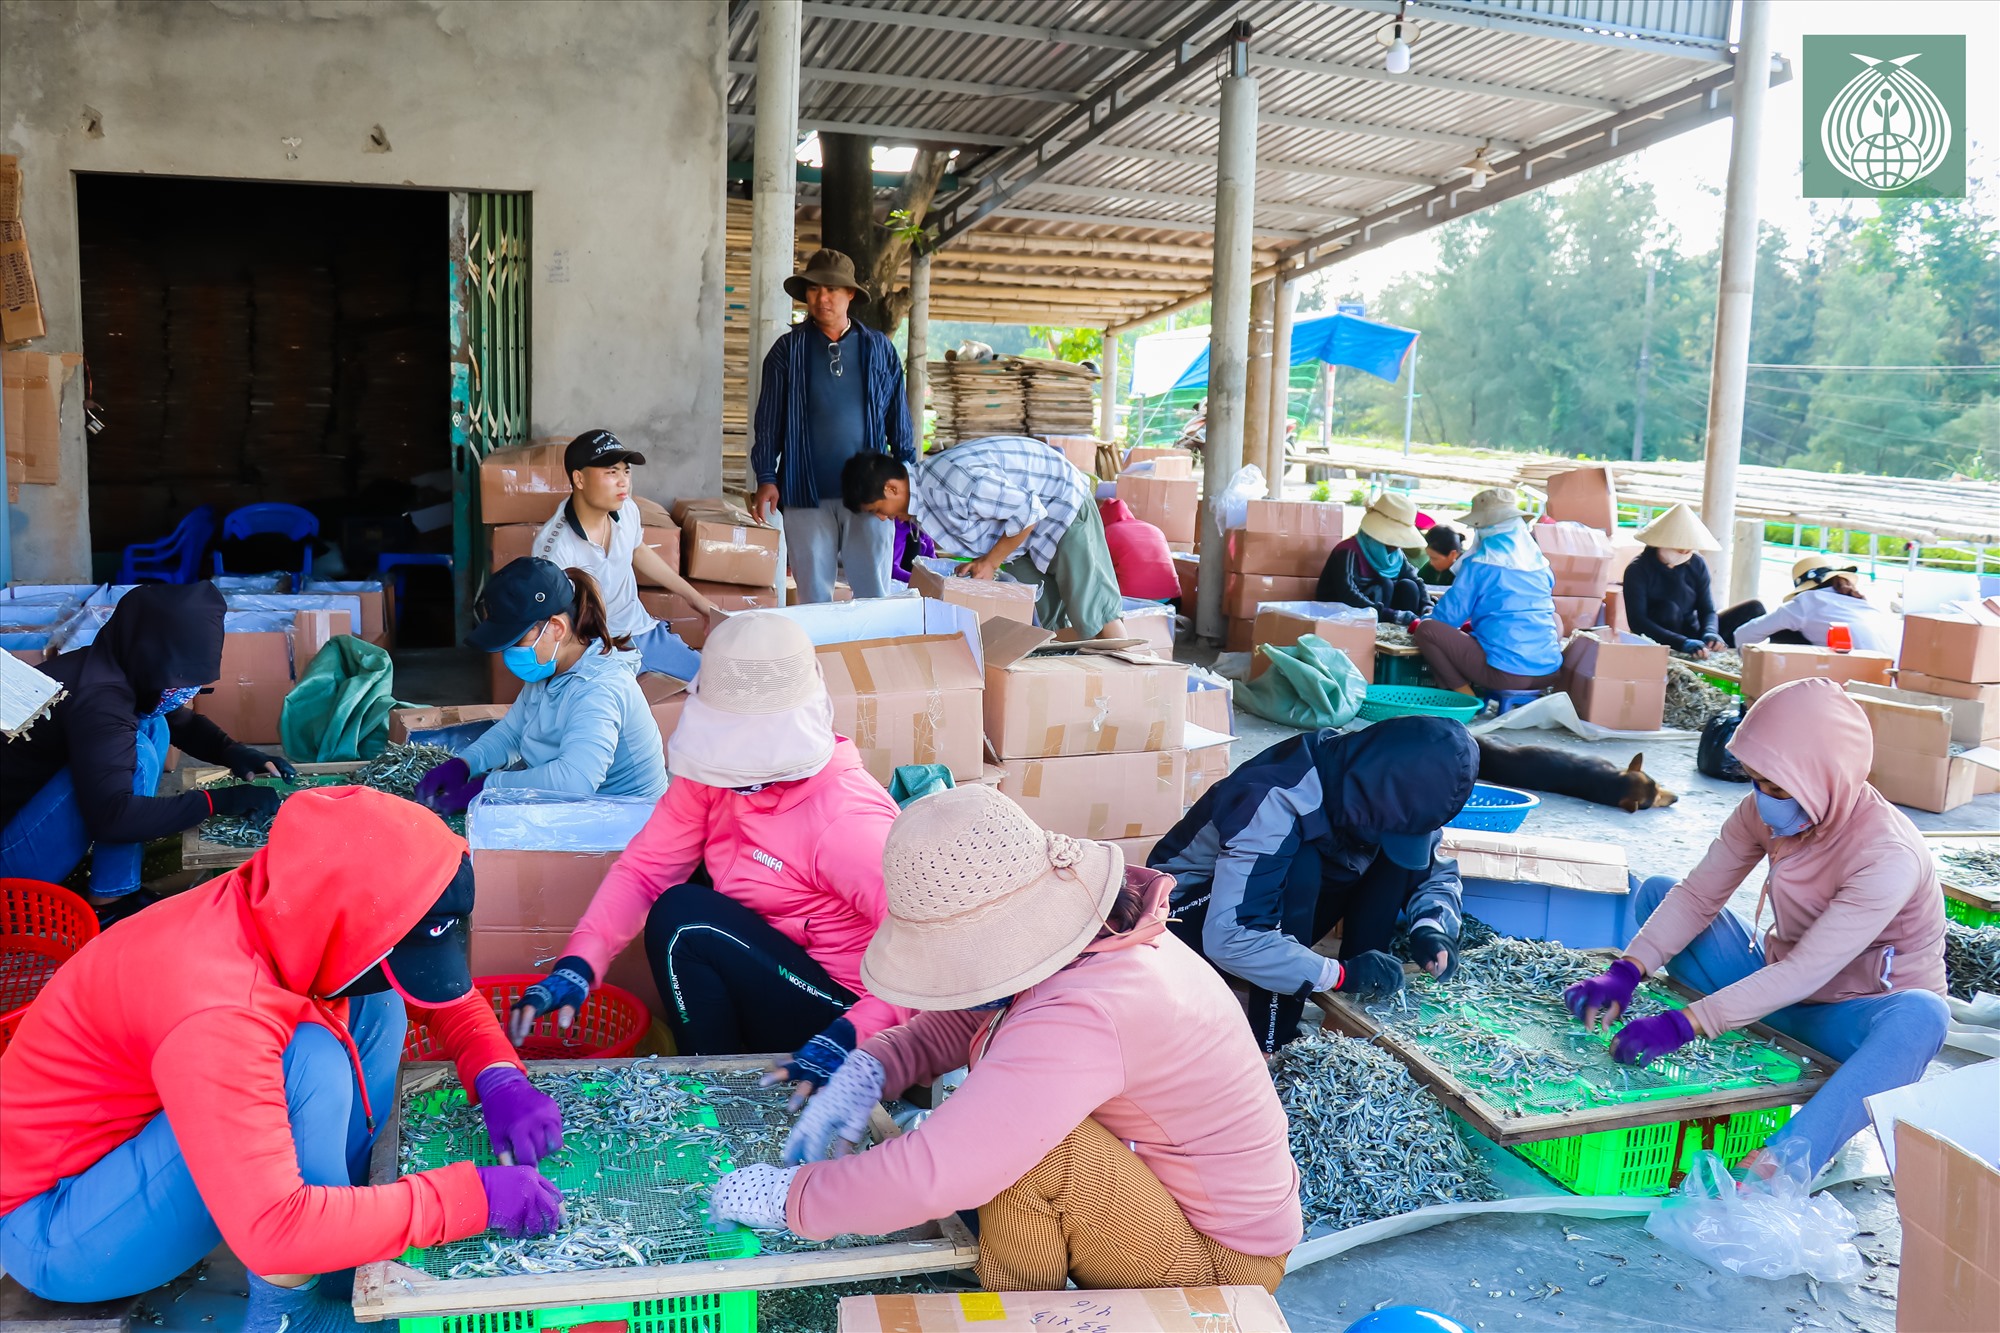 Cơ sở sơ chế đóng gói cá khô tại thị trấn Cửa Việt (Gio Linh, Quảng Trị0 đang vào thời gian cao điểm